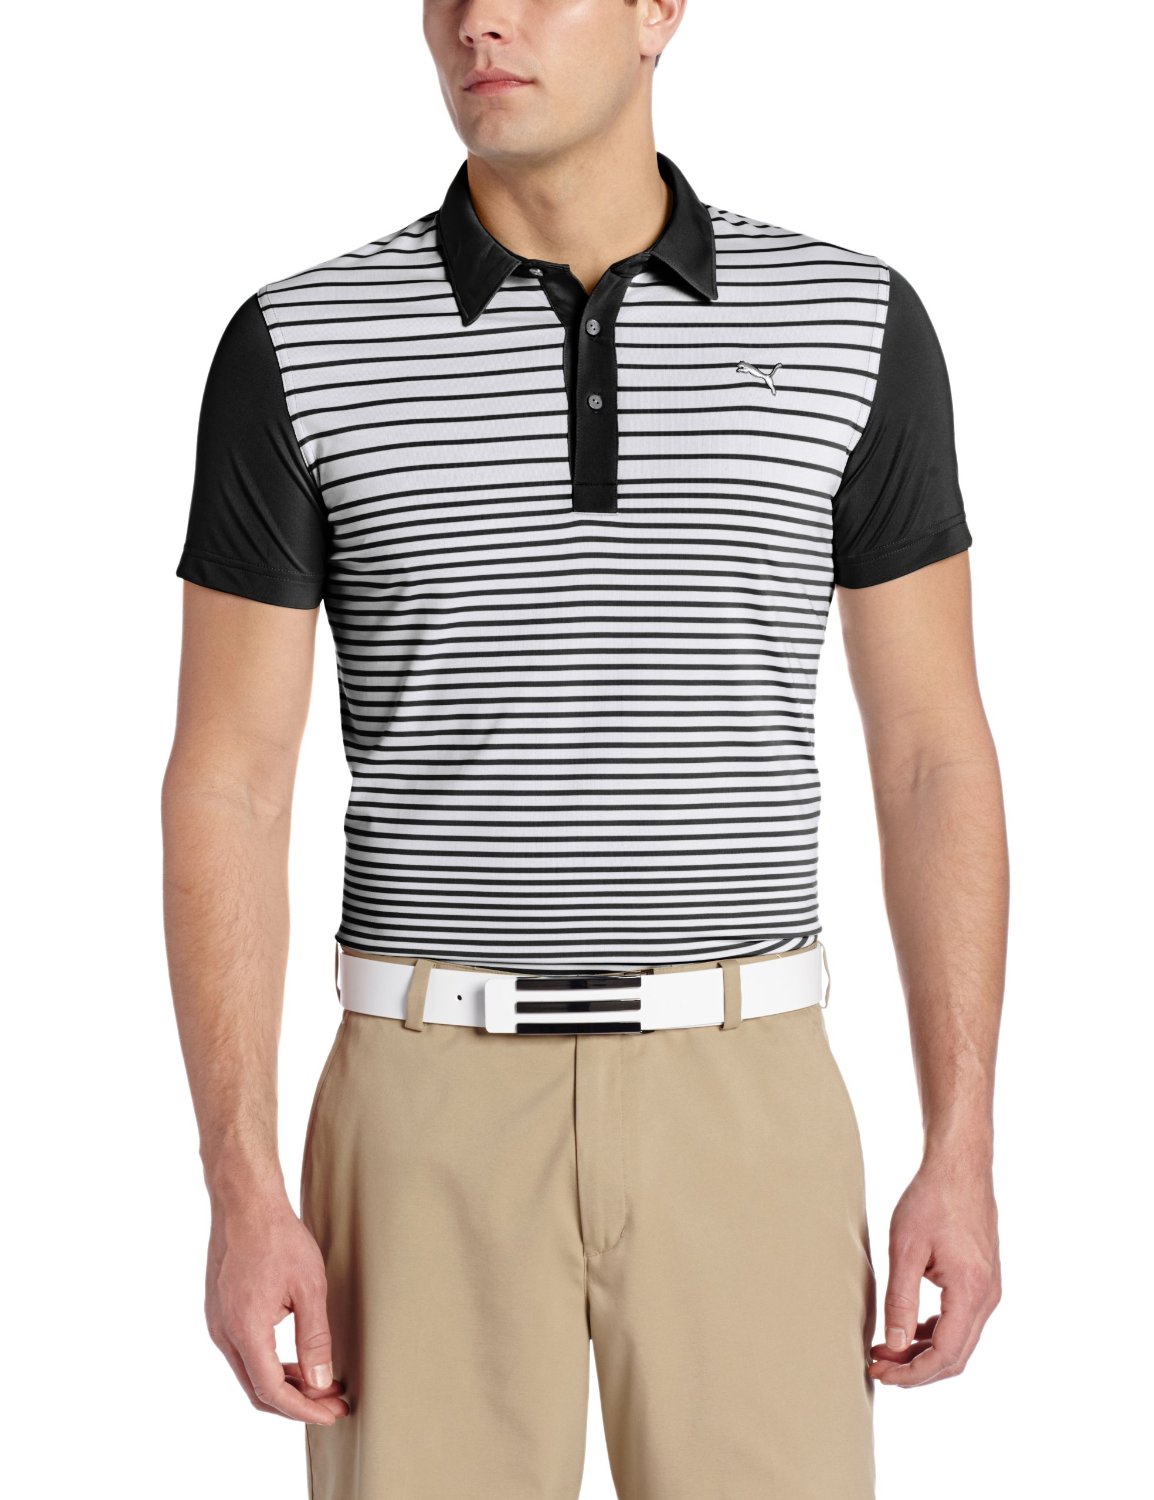 Puma Mens Yarn Dye Stripe Block Golf Polo Shirts